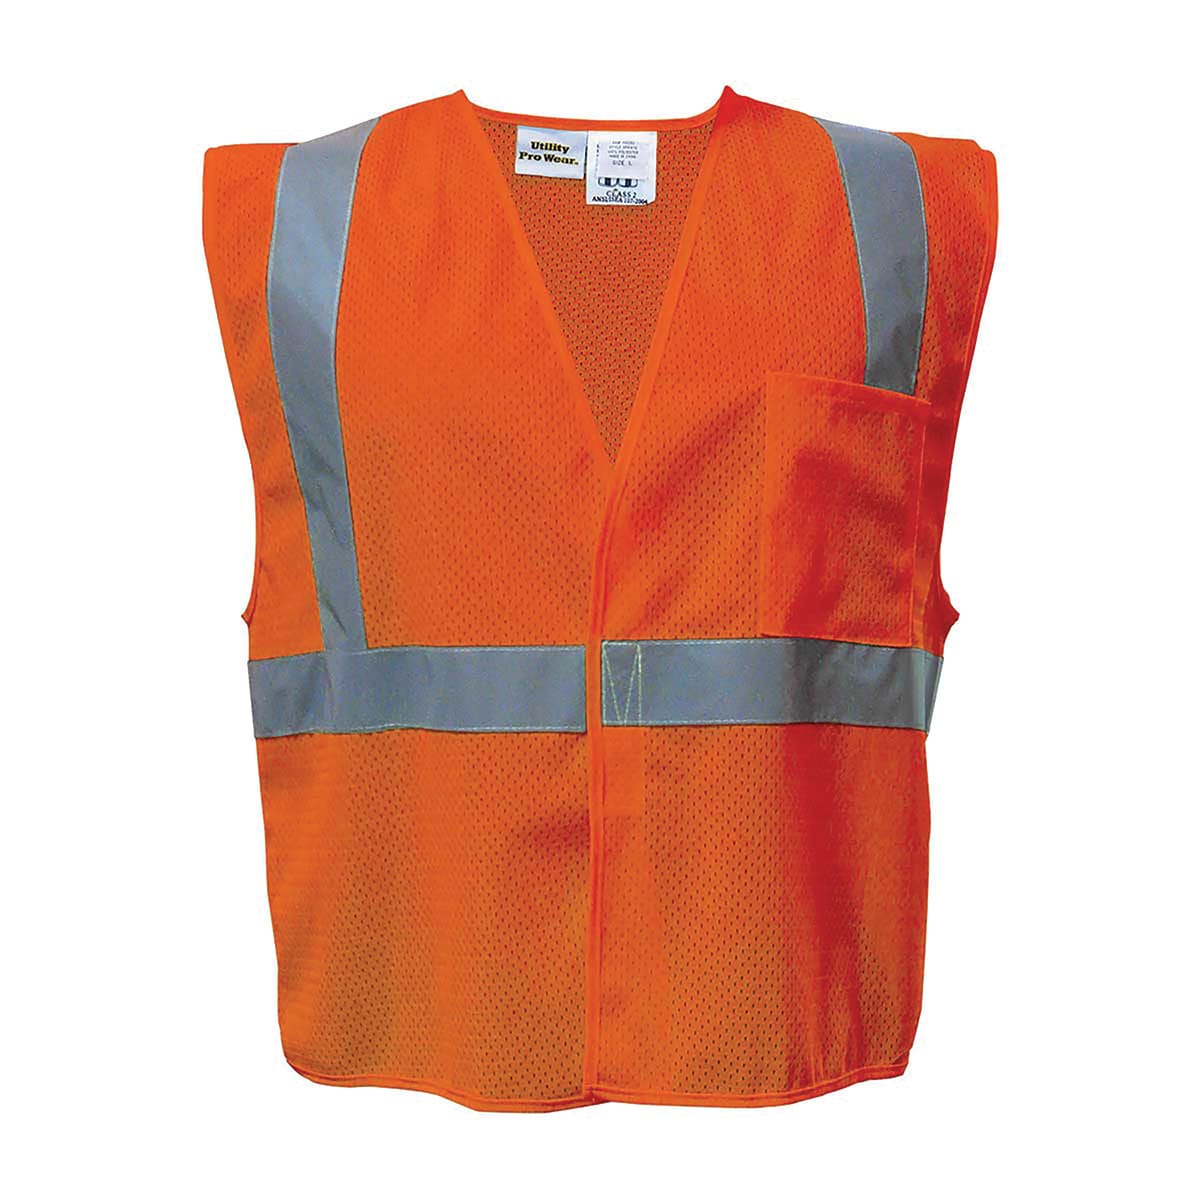 Utility Pro ANSI Class 2 Hi-Vis Mesh Safety Vest